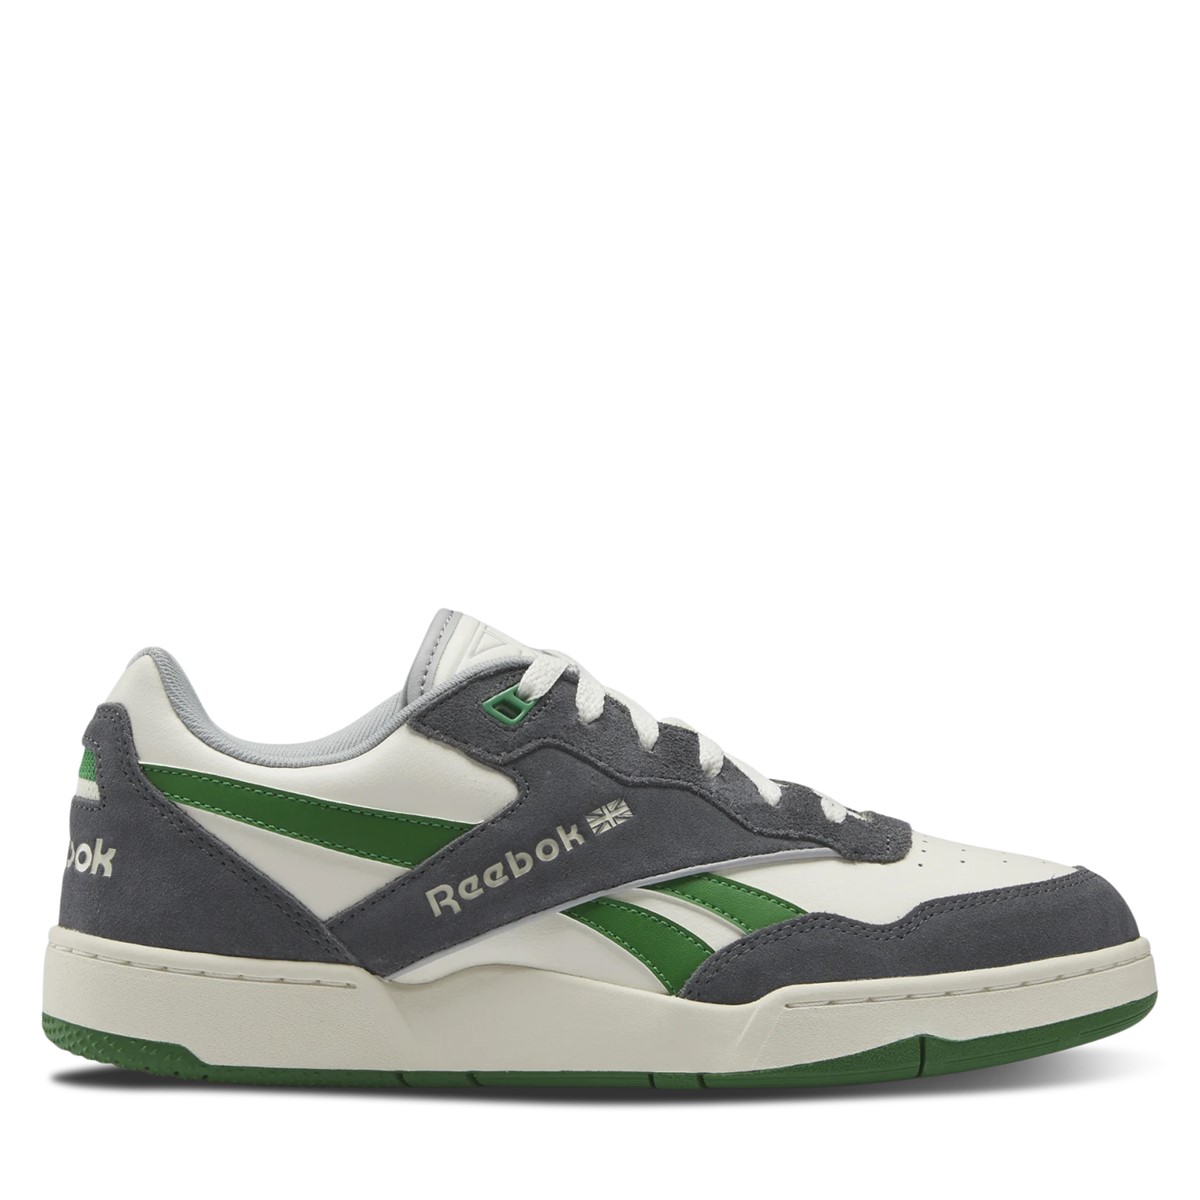 Men's BB4000 II Sneakers in White/Grey/Green